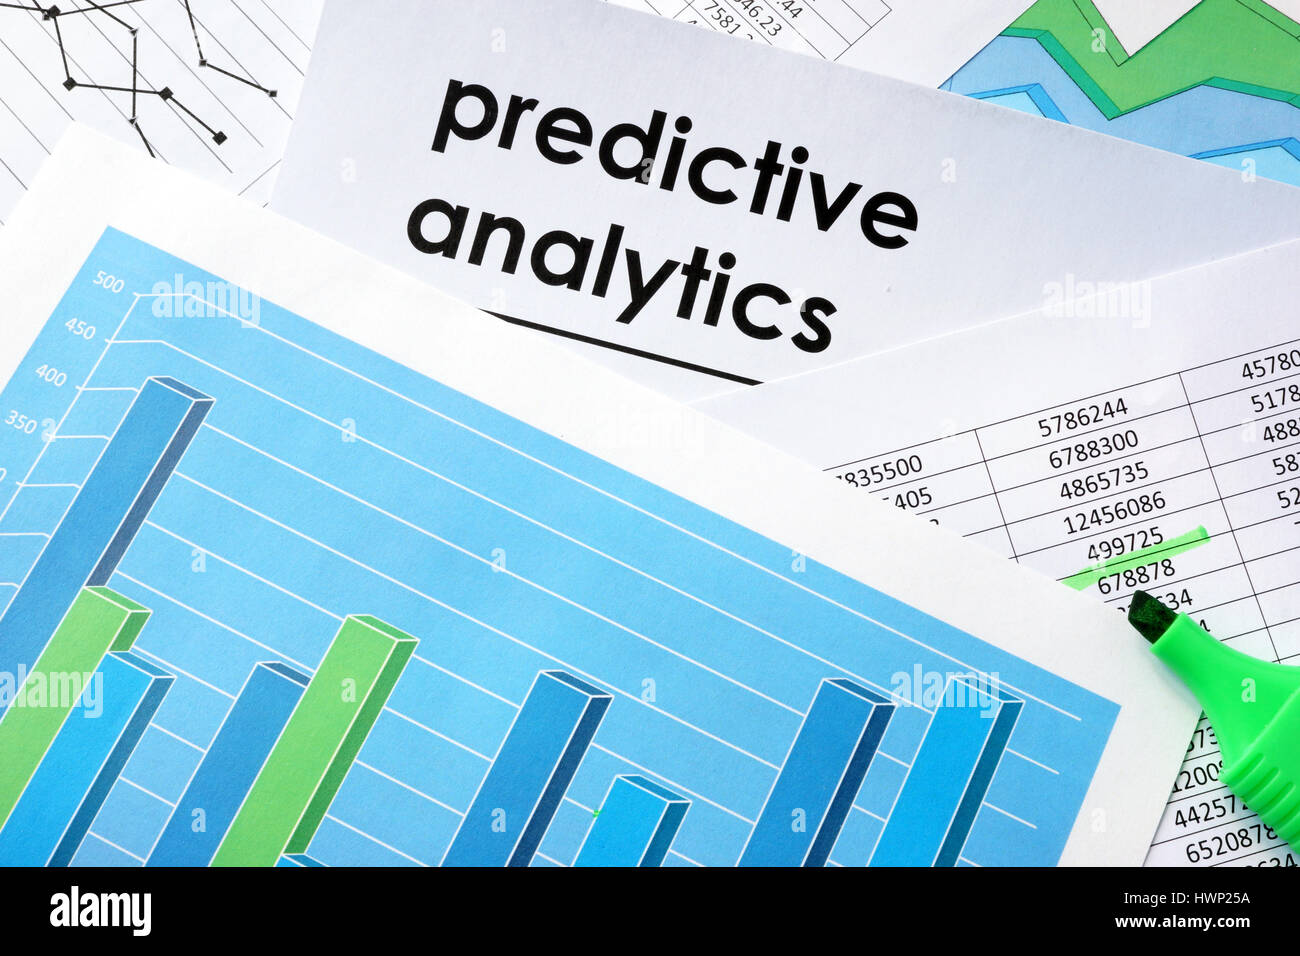 Análisis predictivo en un documento escrito y gráficos de negocios. Foto de stock